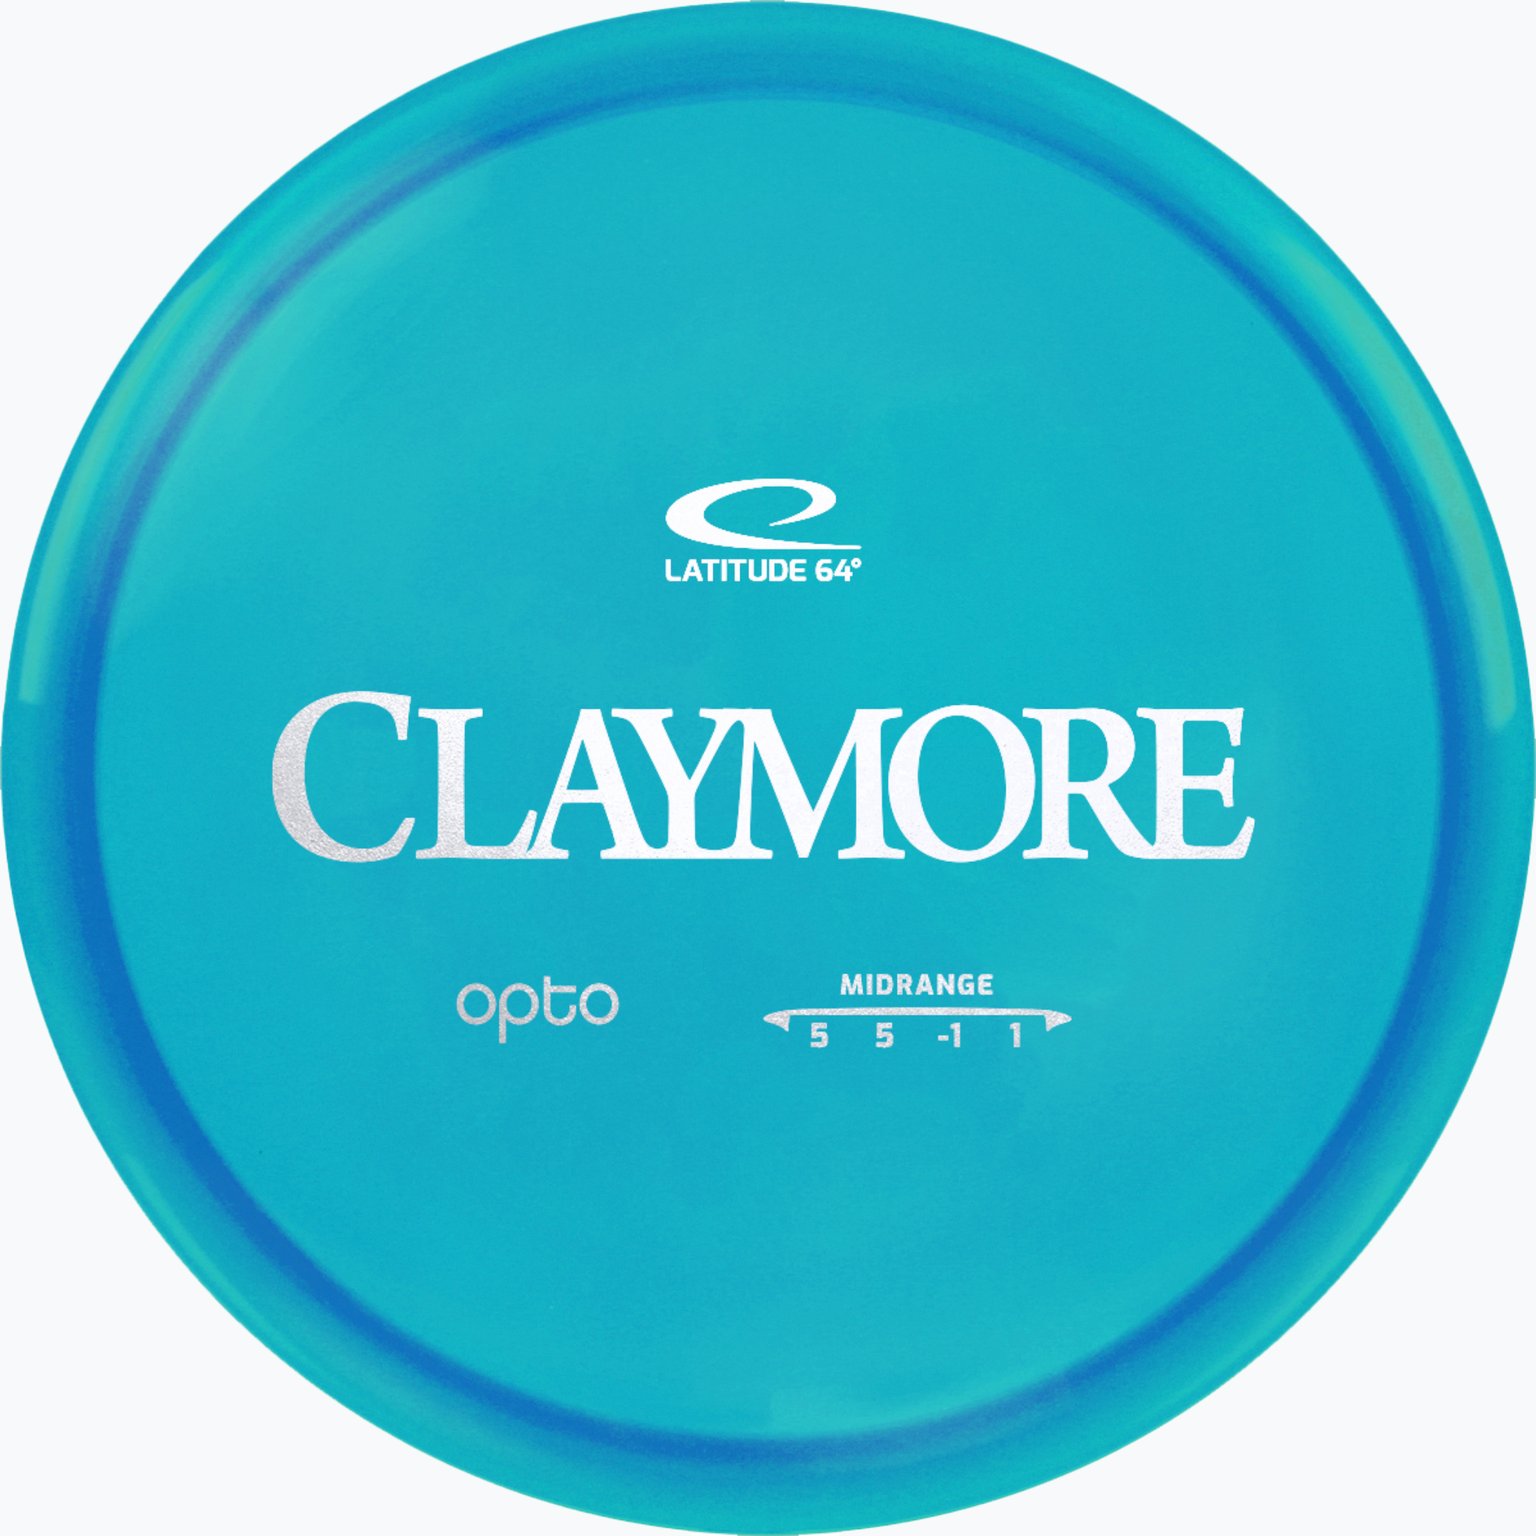 Claymore Opto Midrange disc